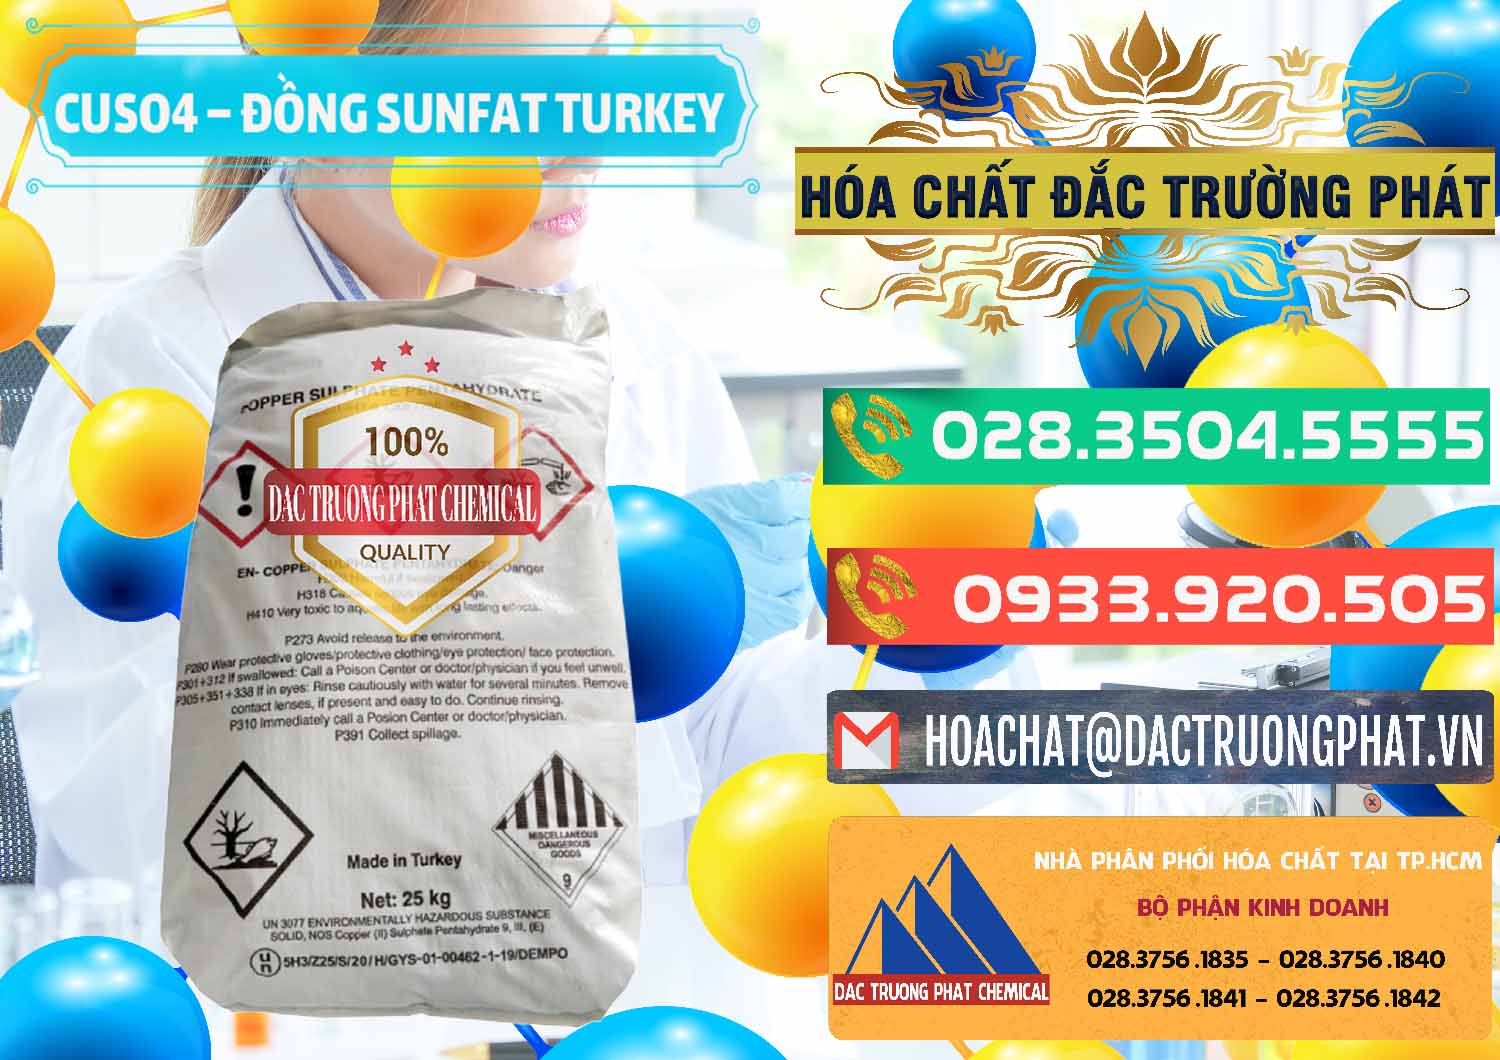 Nơi chuyên bán _ cung cấp CuSO4 – Đồng Sunfat Thổ Nhĩ Kỳ Turkey - 0481 - Chuyên phân phối ( cung ứng ) hóa chất tại TP.HCM - congtyhoachat.com.vn